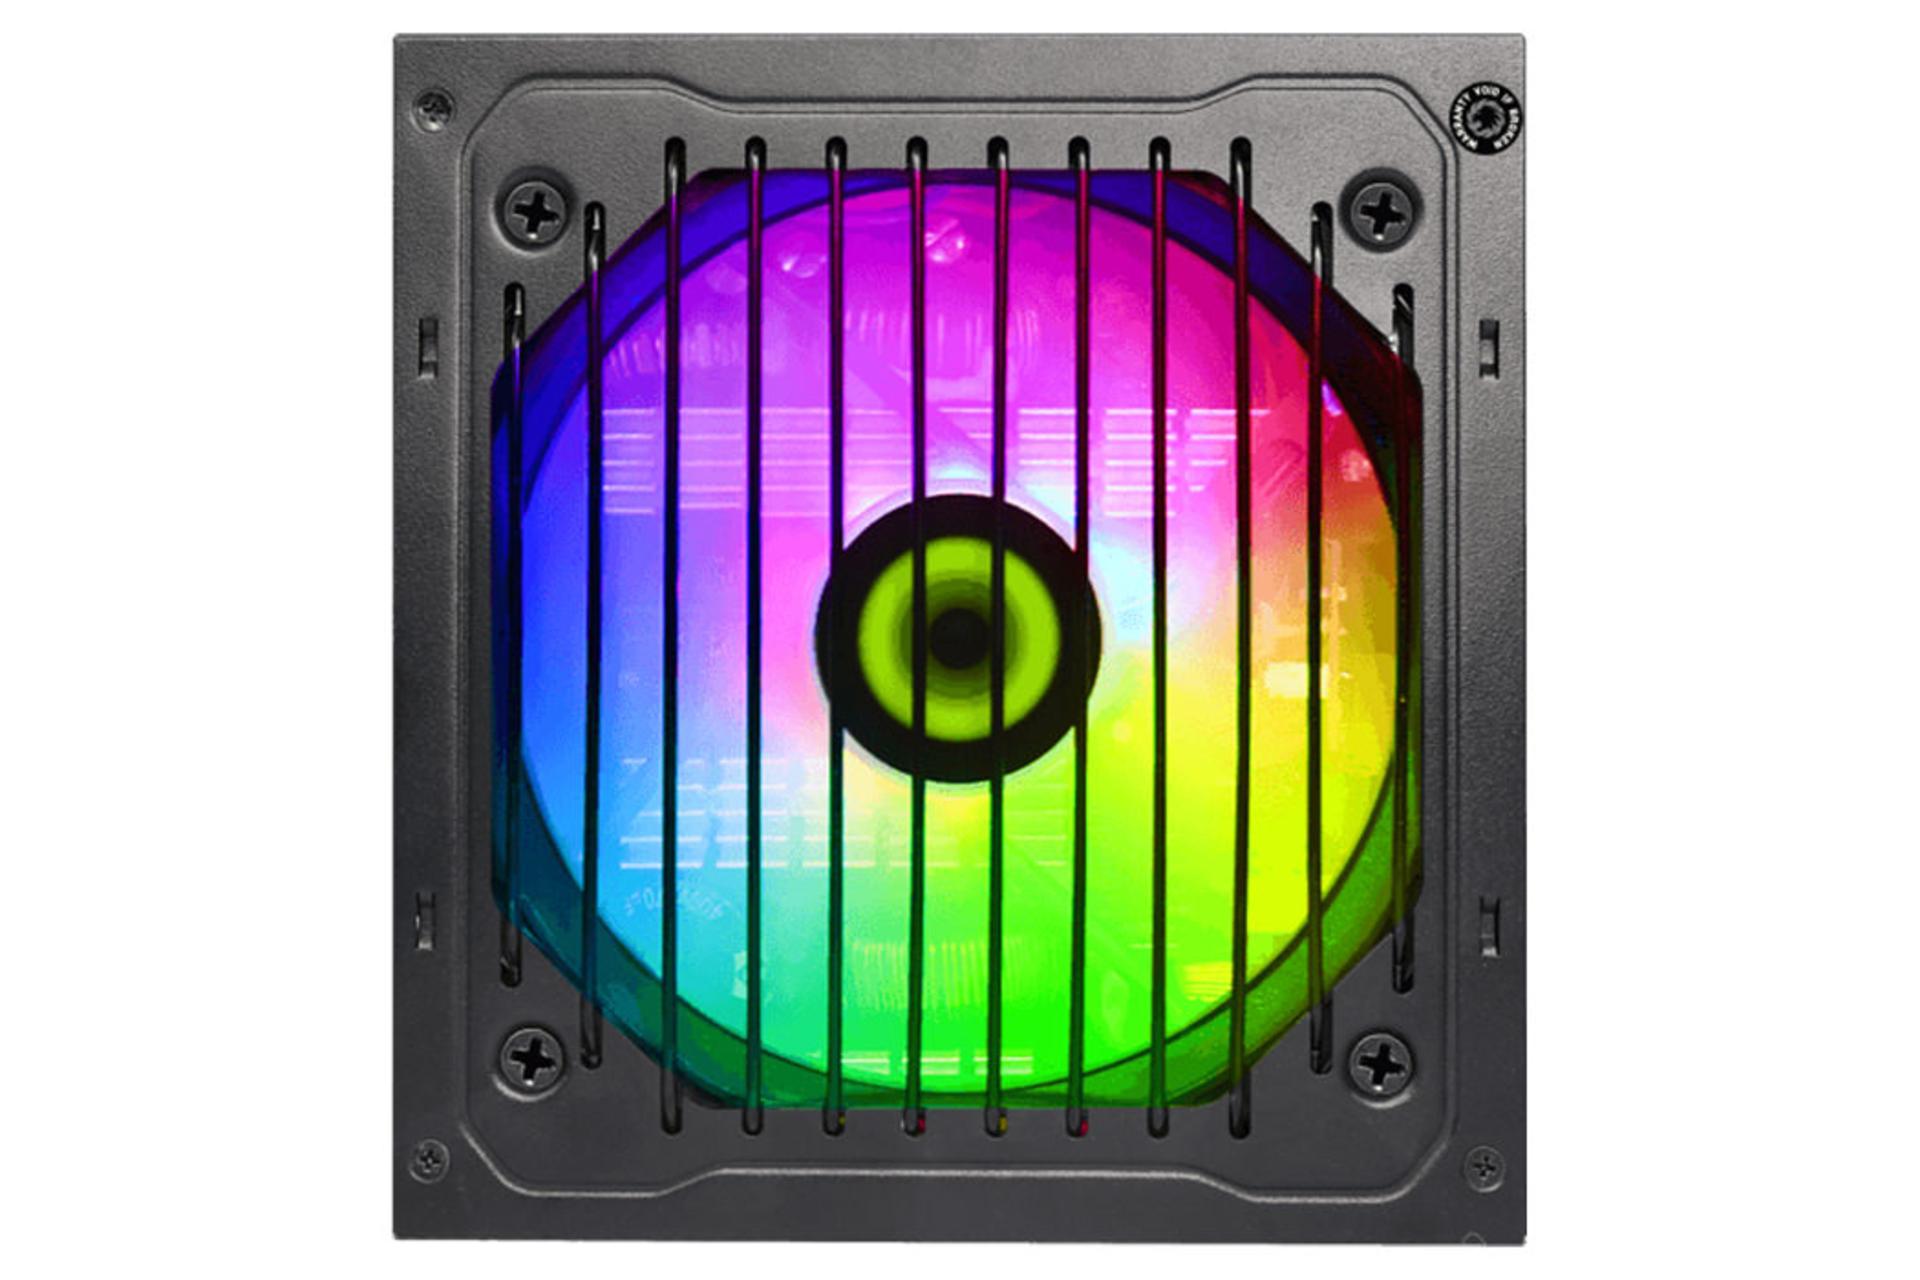 پاور کامپیوتر گیم مکس VP-600-RGB-M با توان 600 وات نمای فن